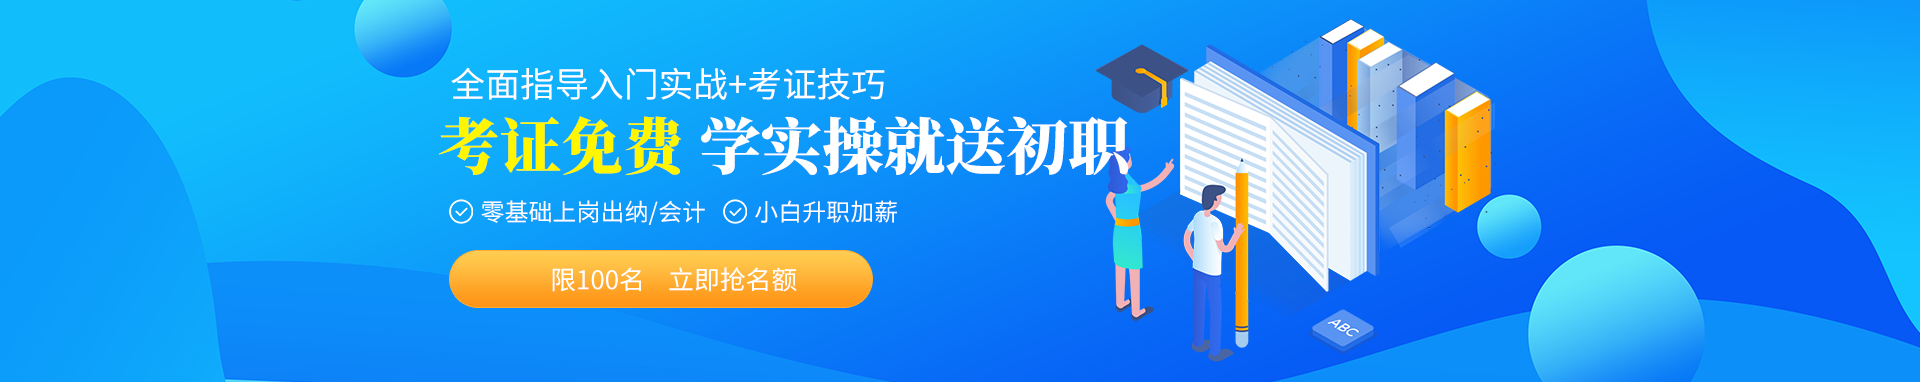 上海仁和会计培训学校 横幅广告